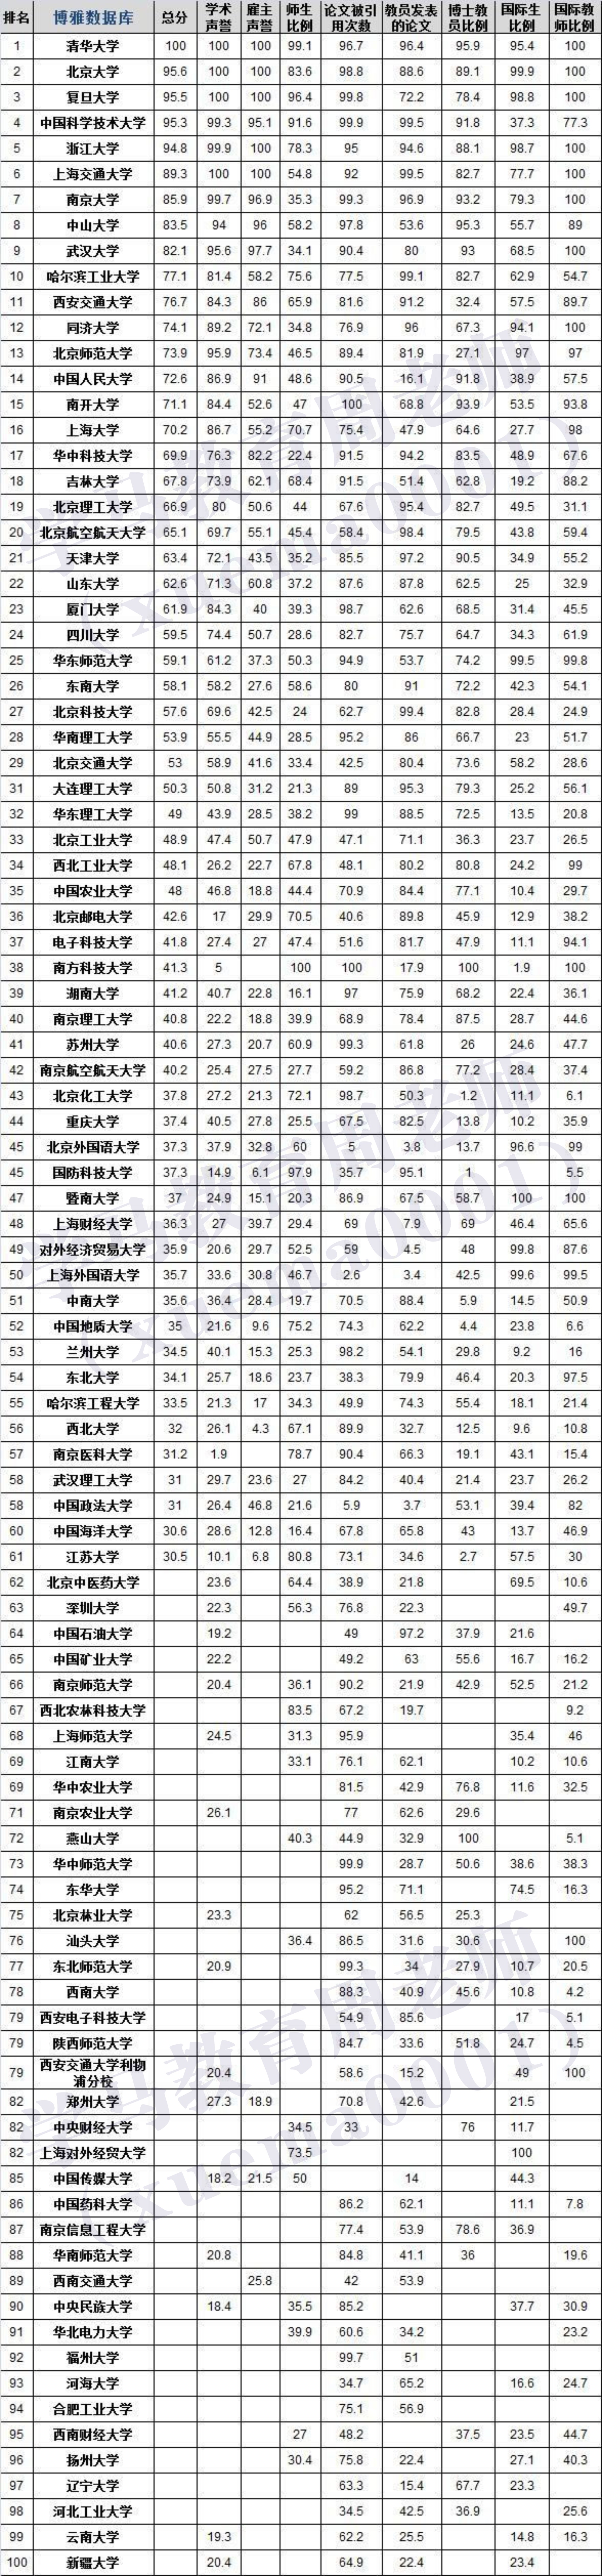 qs2019中国大陆大学排名top100完整榜单一流学科建设高校中,上海大学